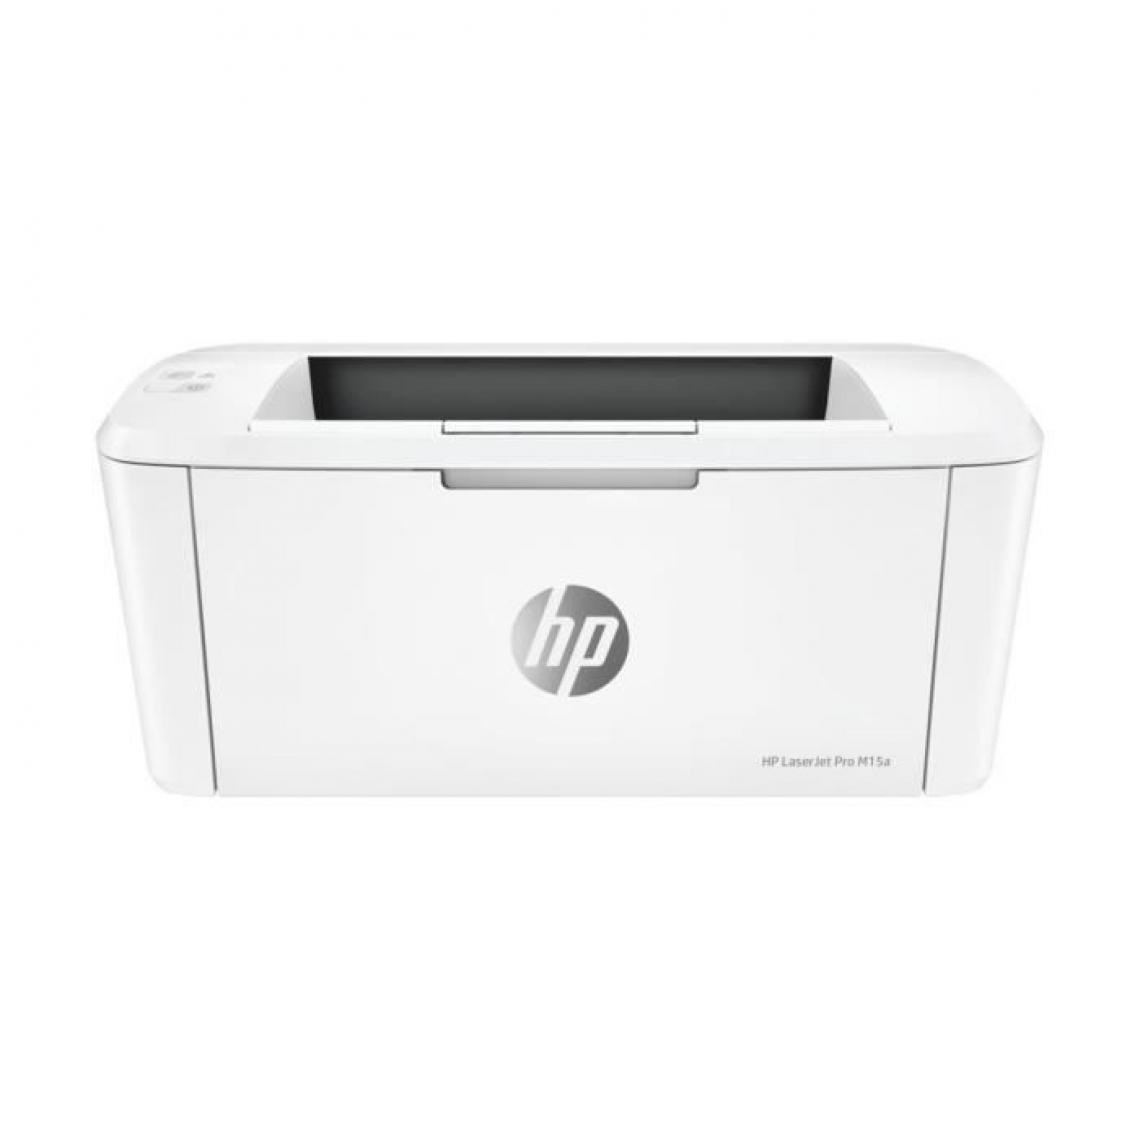 Hp - Imprimante HP LaserJet Pro M15a- Monochrome - Ultra compacte - Imprimante Jet d'encre